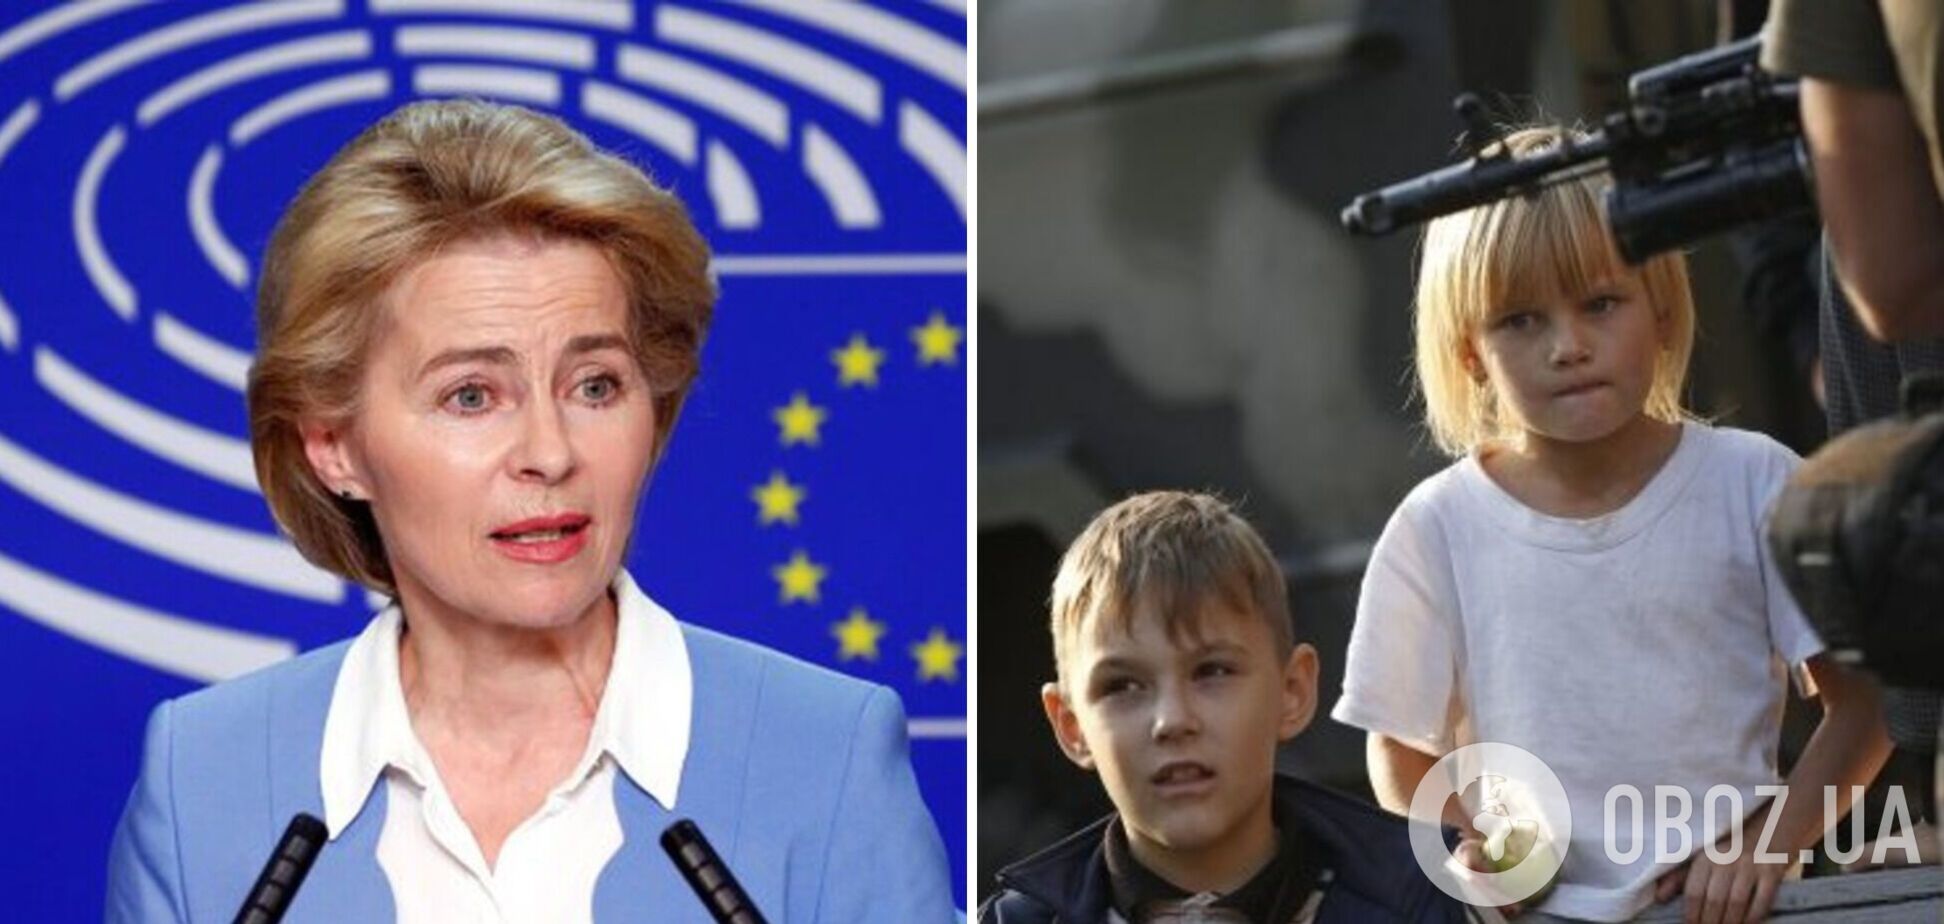 Єврокомісія запустила ініціативу щодо повернення викрадених Росією дітей в Україну, – фон дер Ляєн